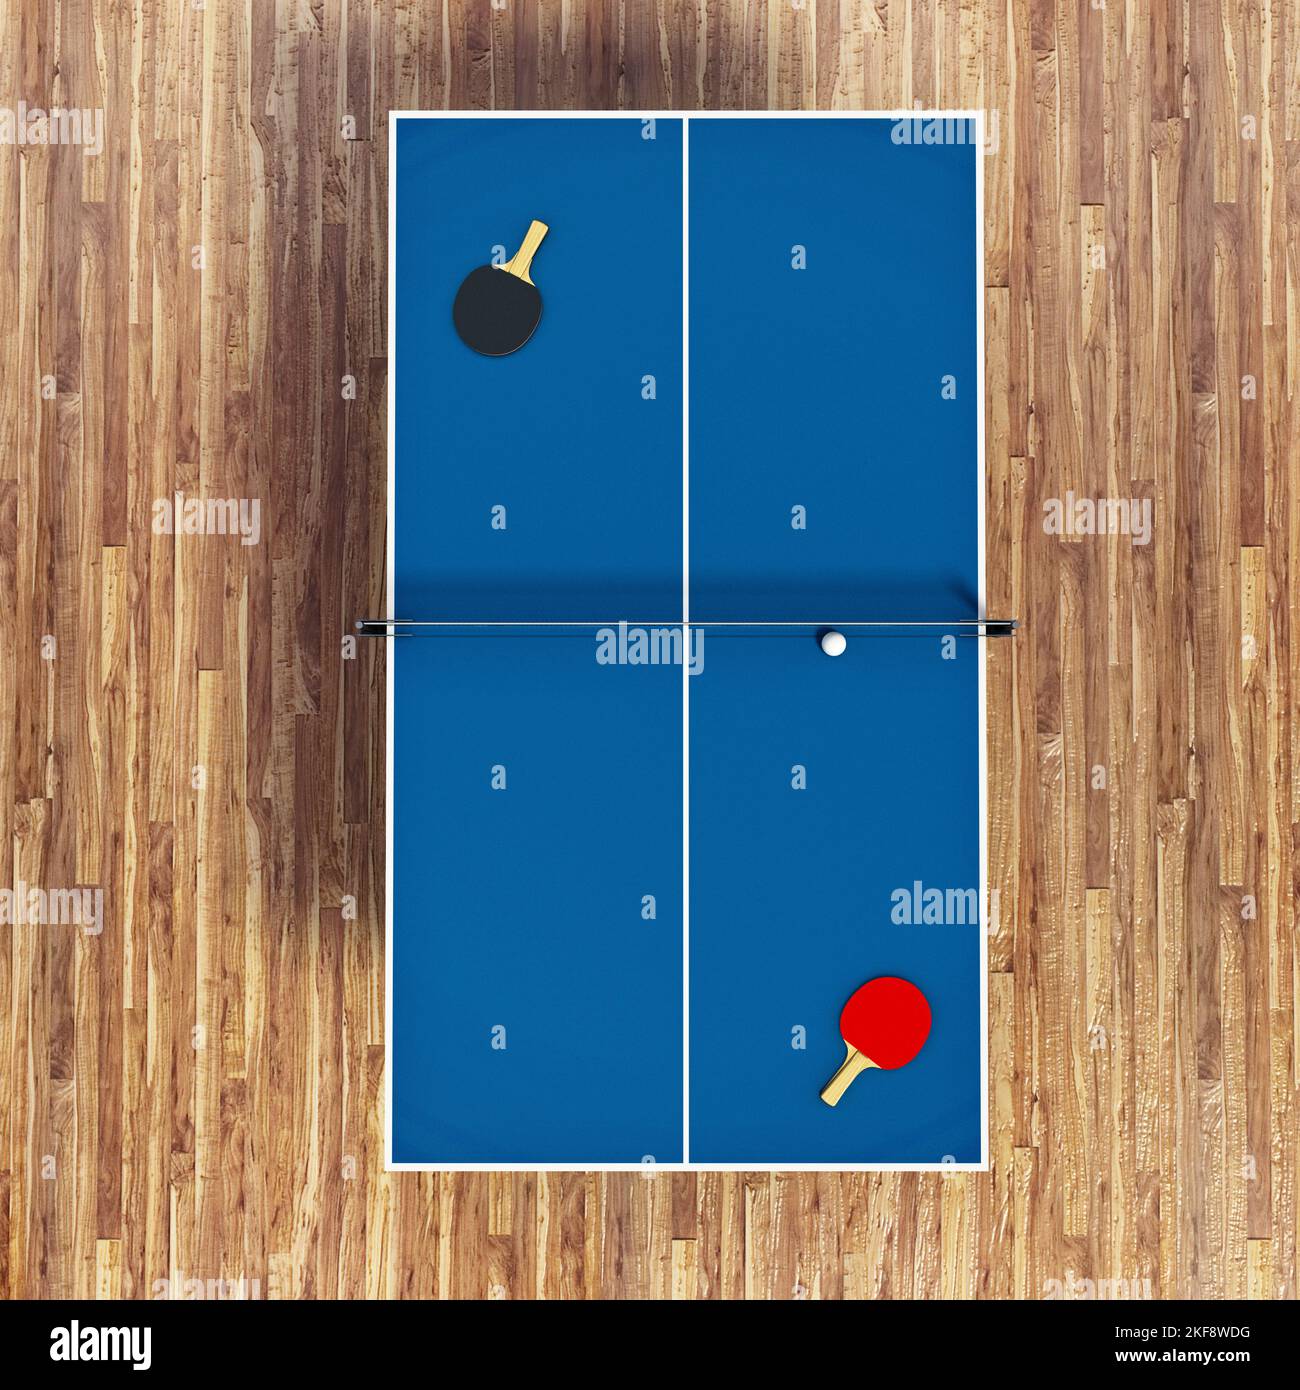 Tenis de mesa, raquetas y pelota en el suelo de parquet. Ilustración 3D. Foto de stock